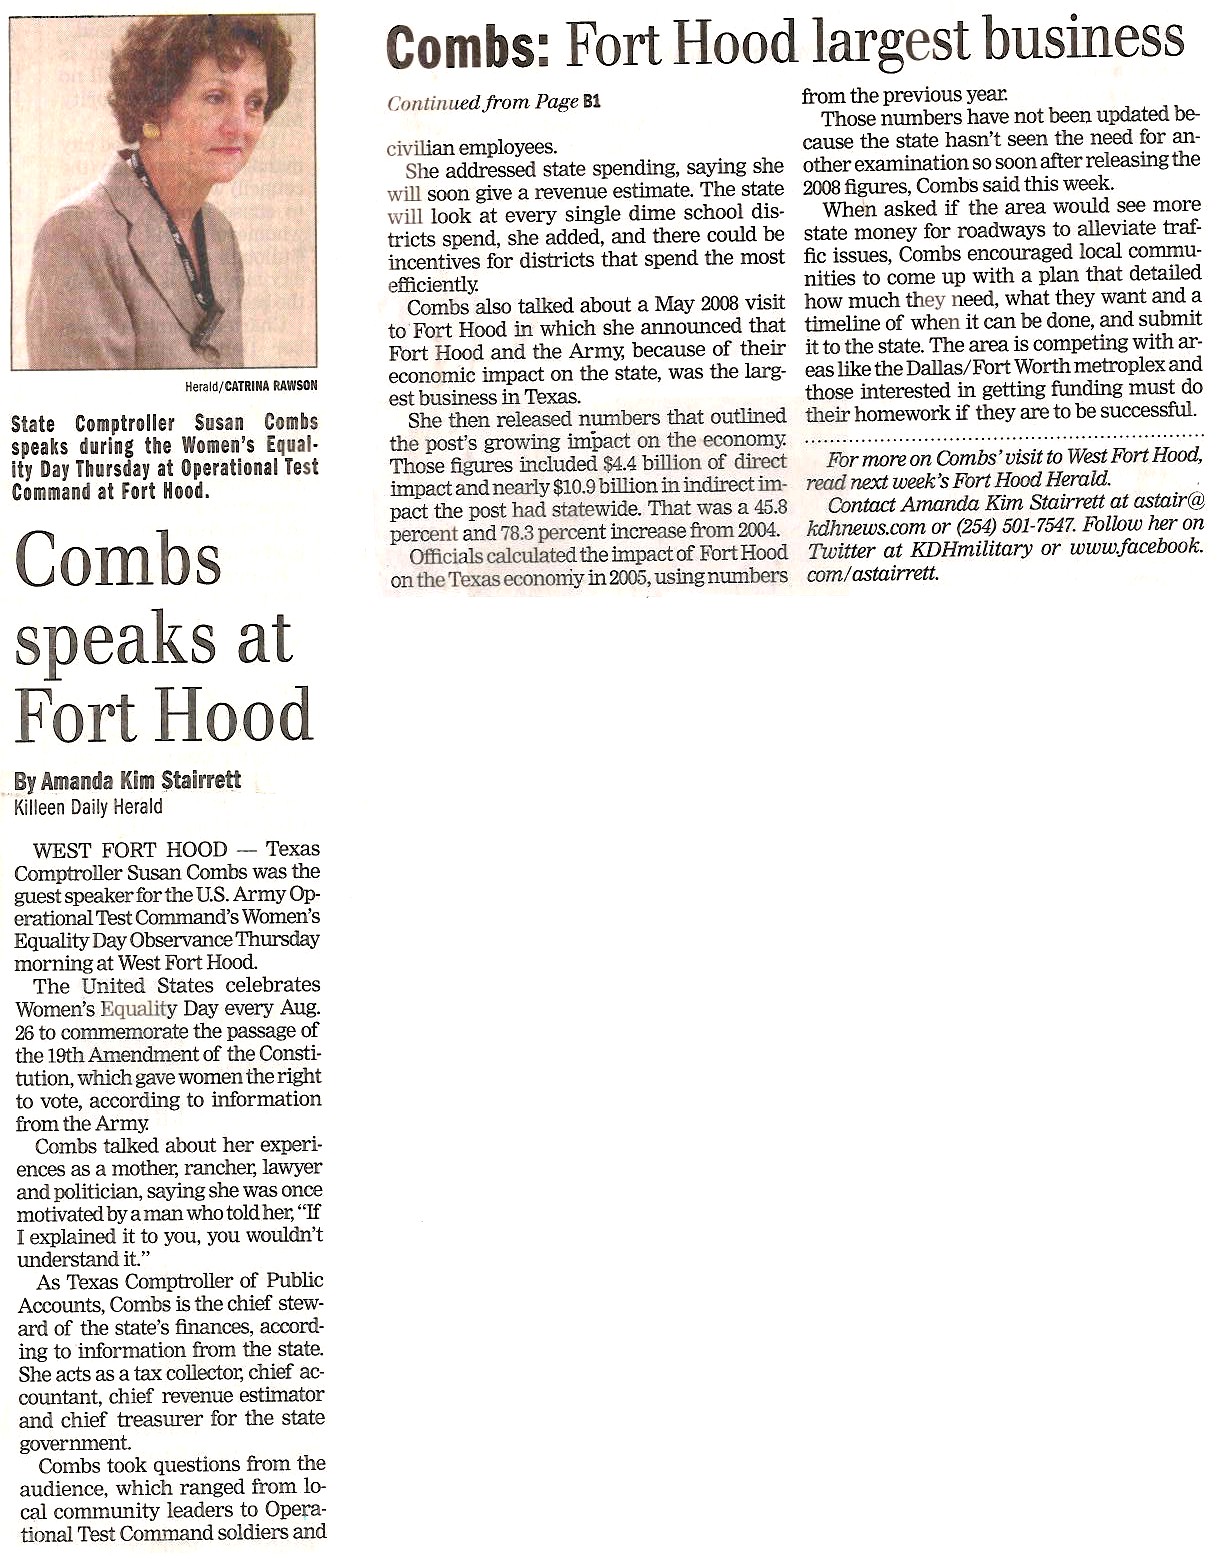 Combs speaks at Fort Hood